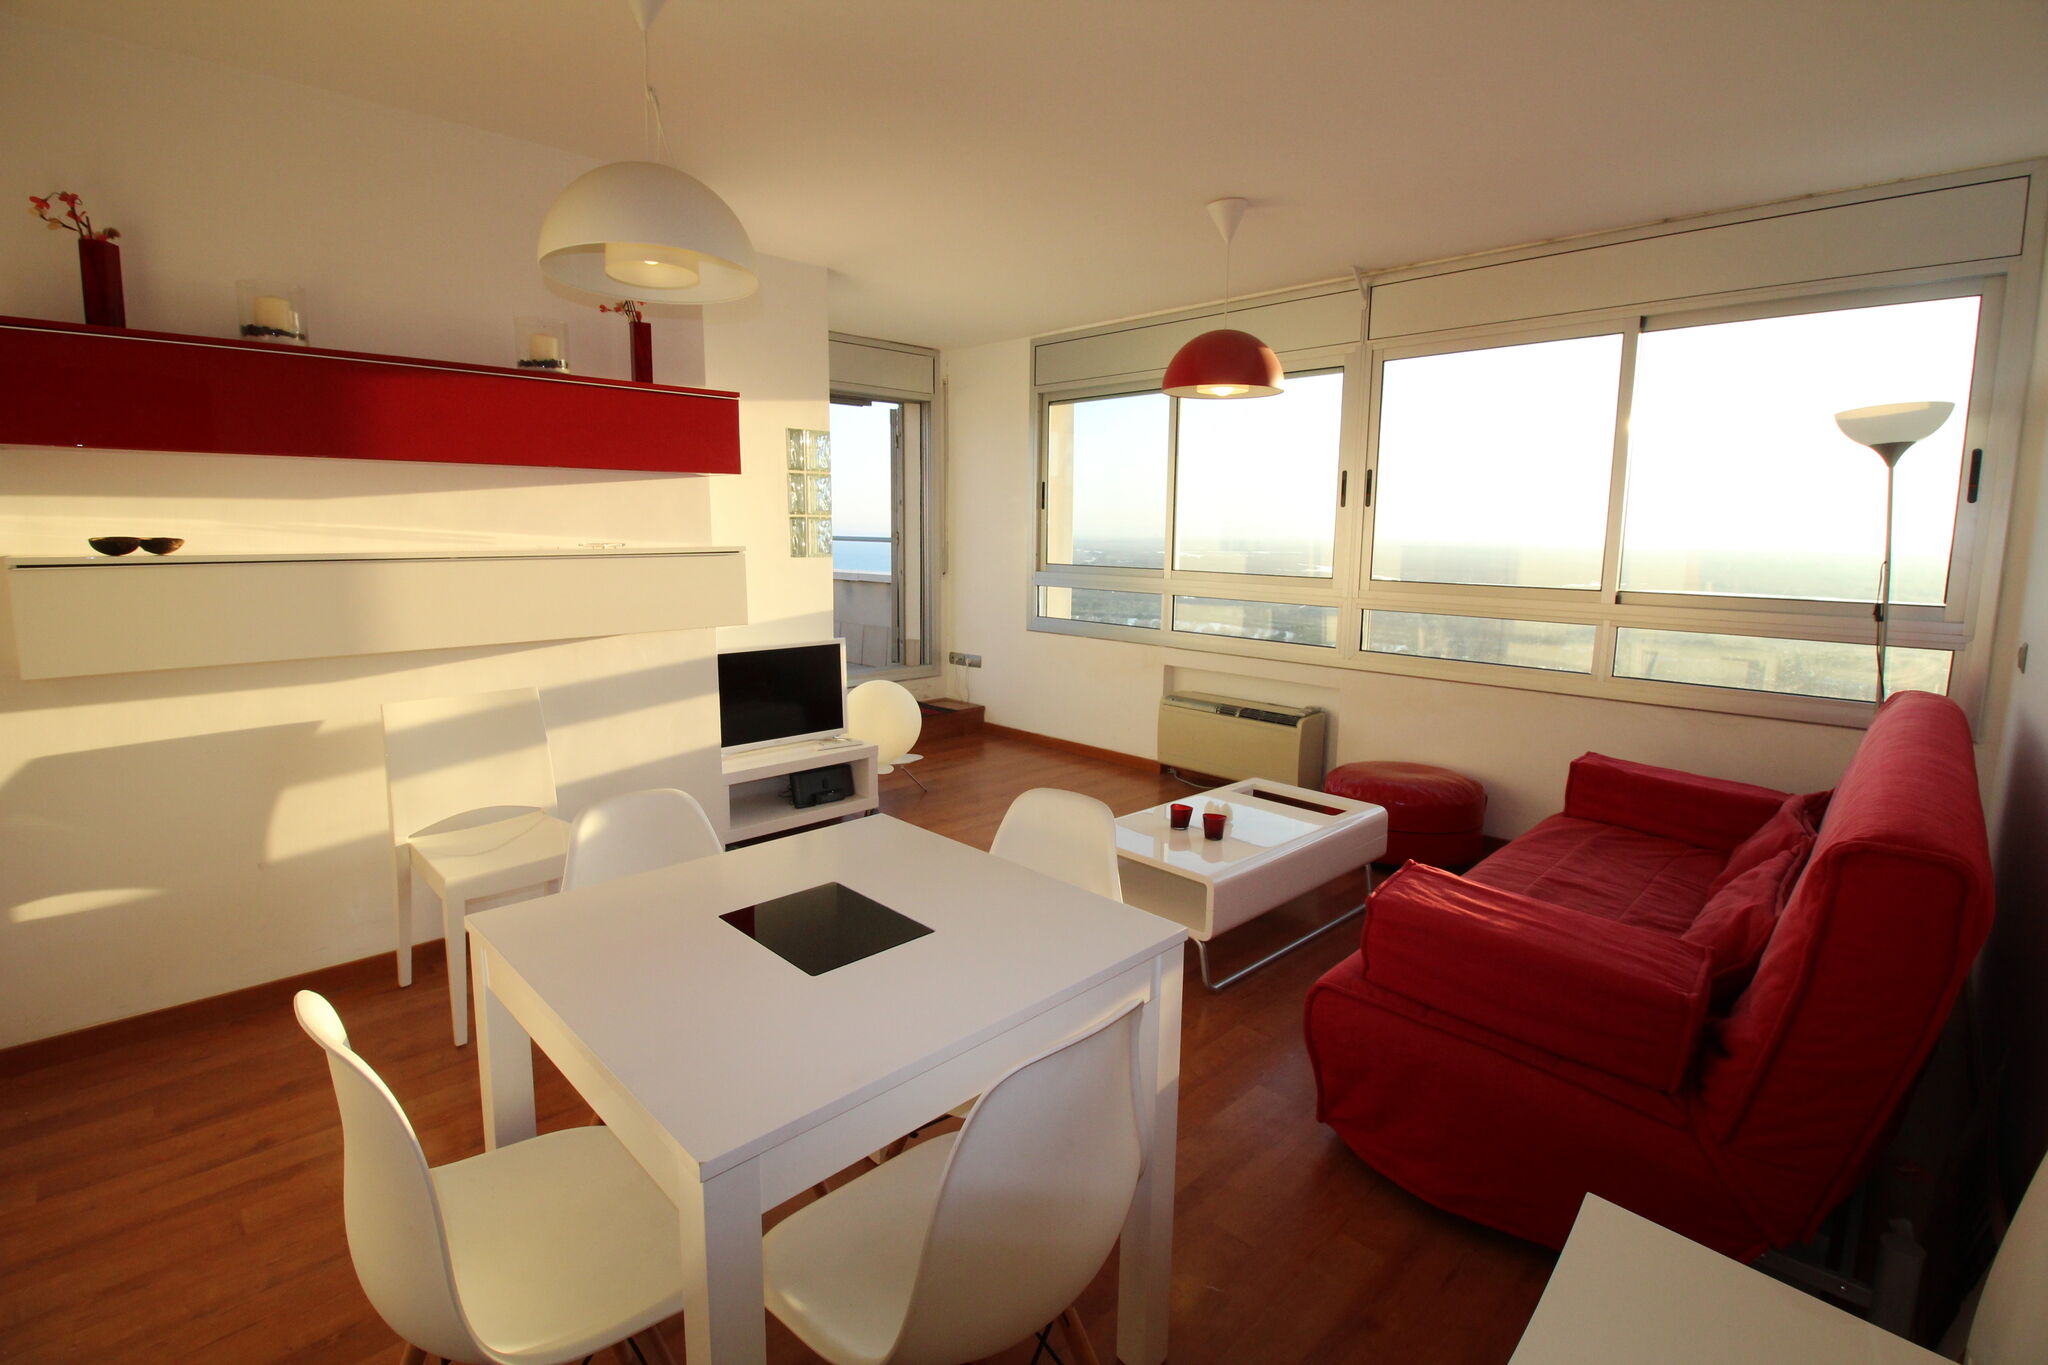 Appartement met uitzicht op zee, loopafstand van het strand